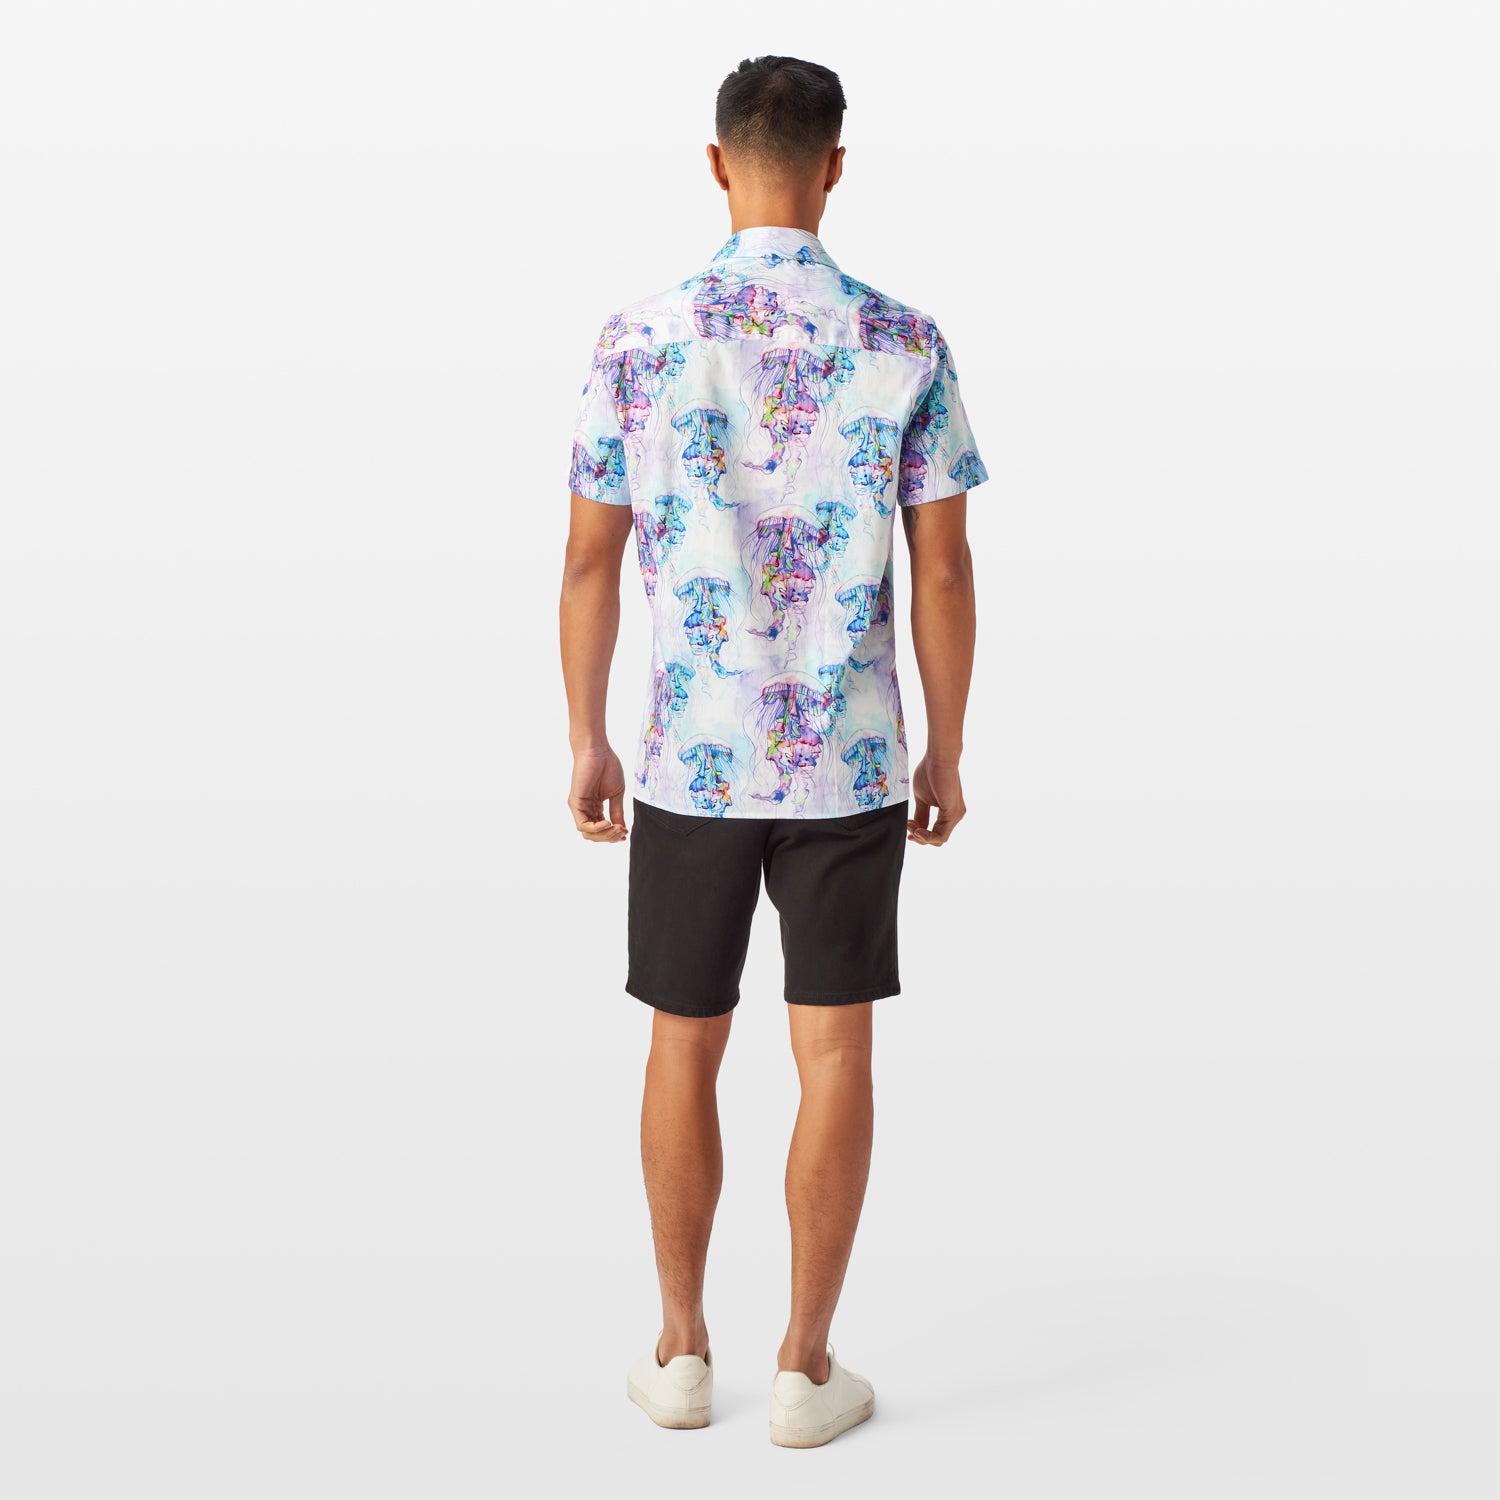 The Jellyfish Short Sleeve Shirt